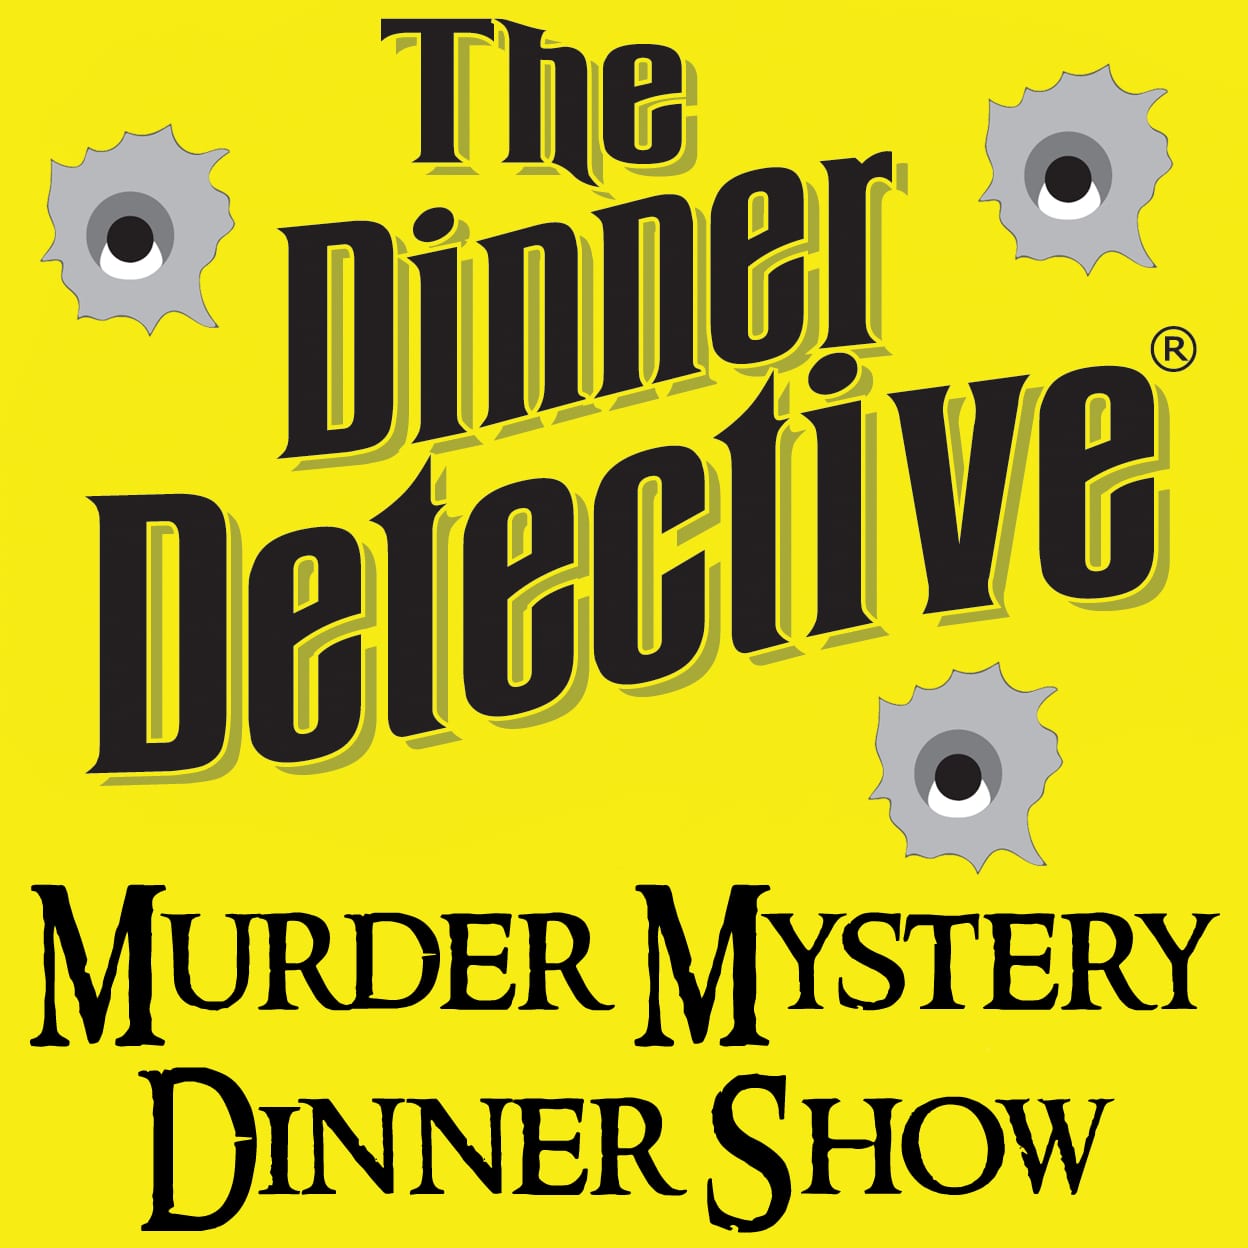 Logo of The Dinner Detective Murder Mystery Dinner Show.